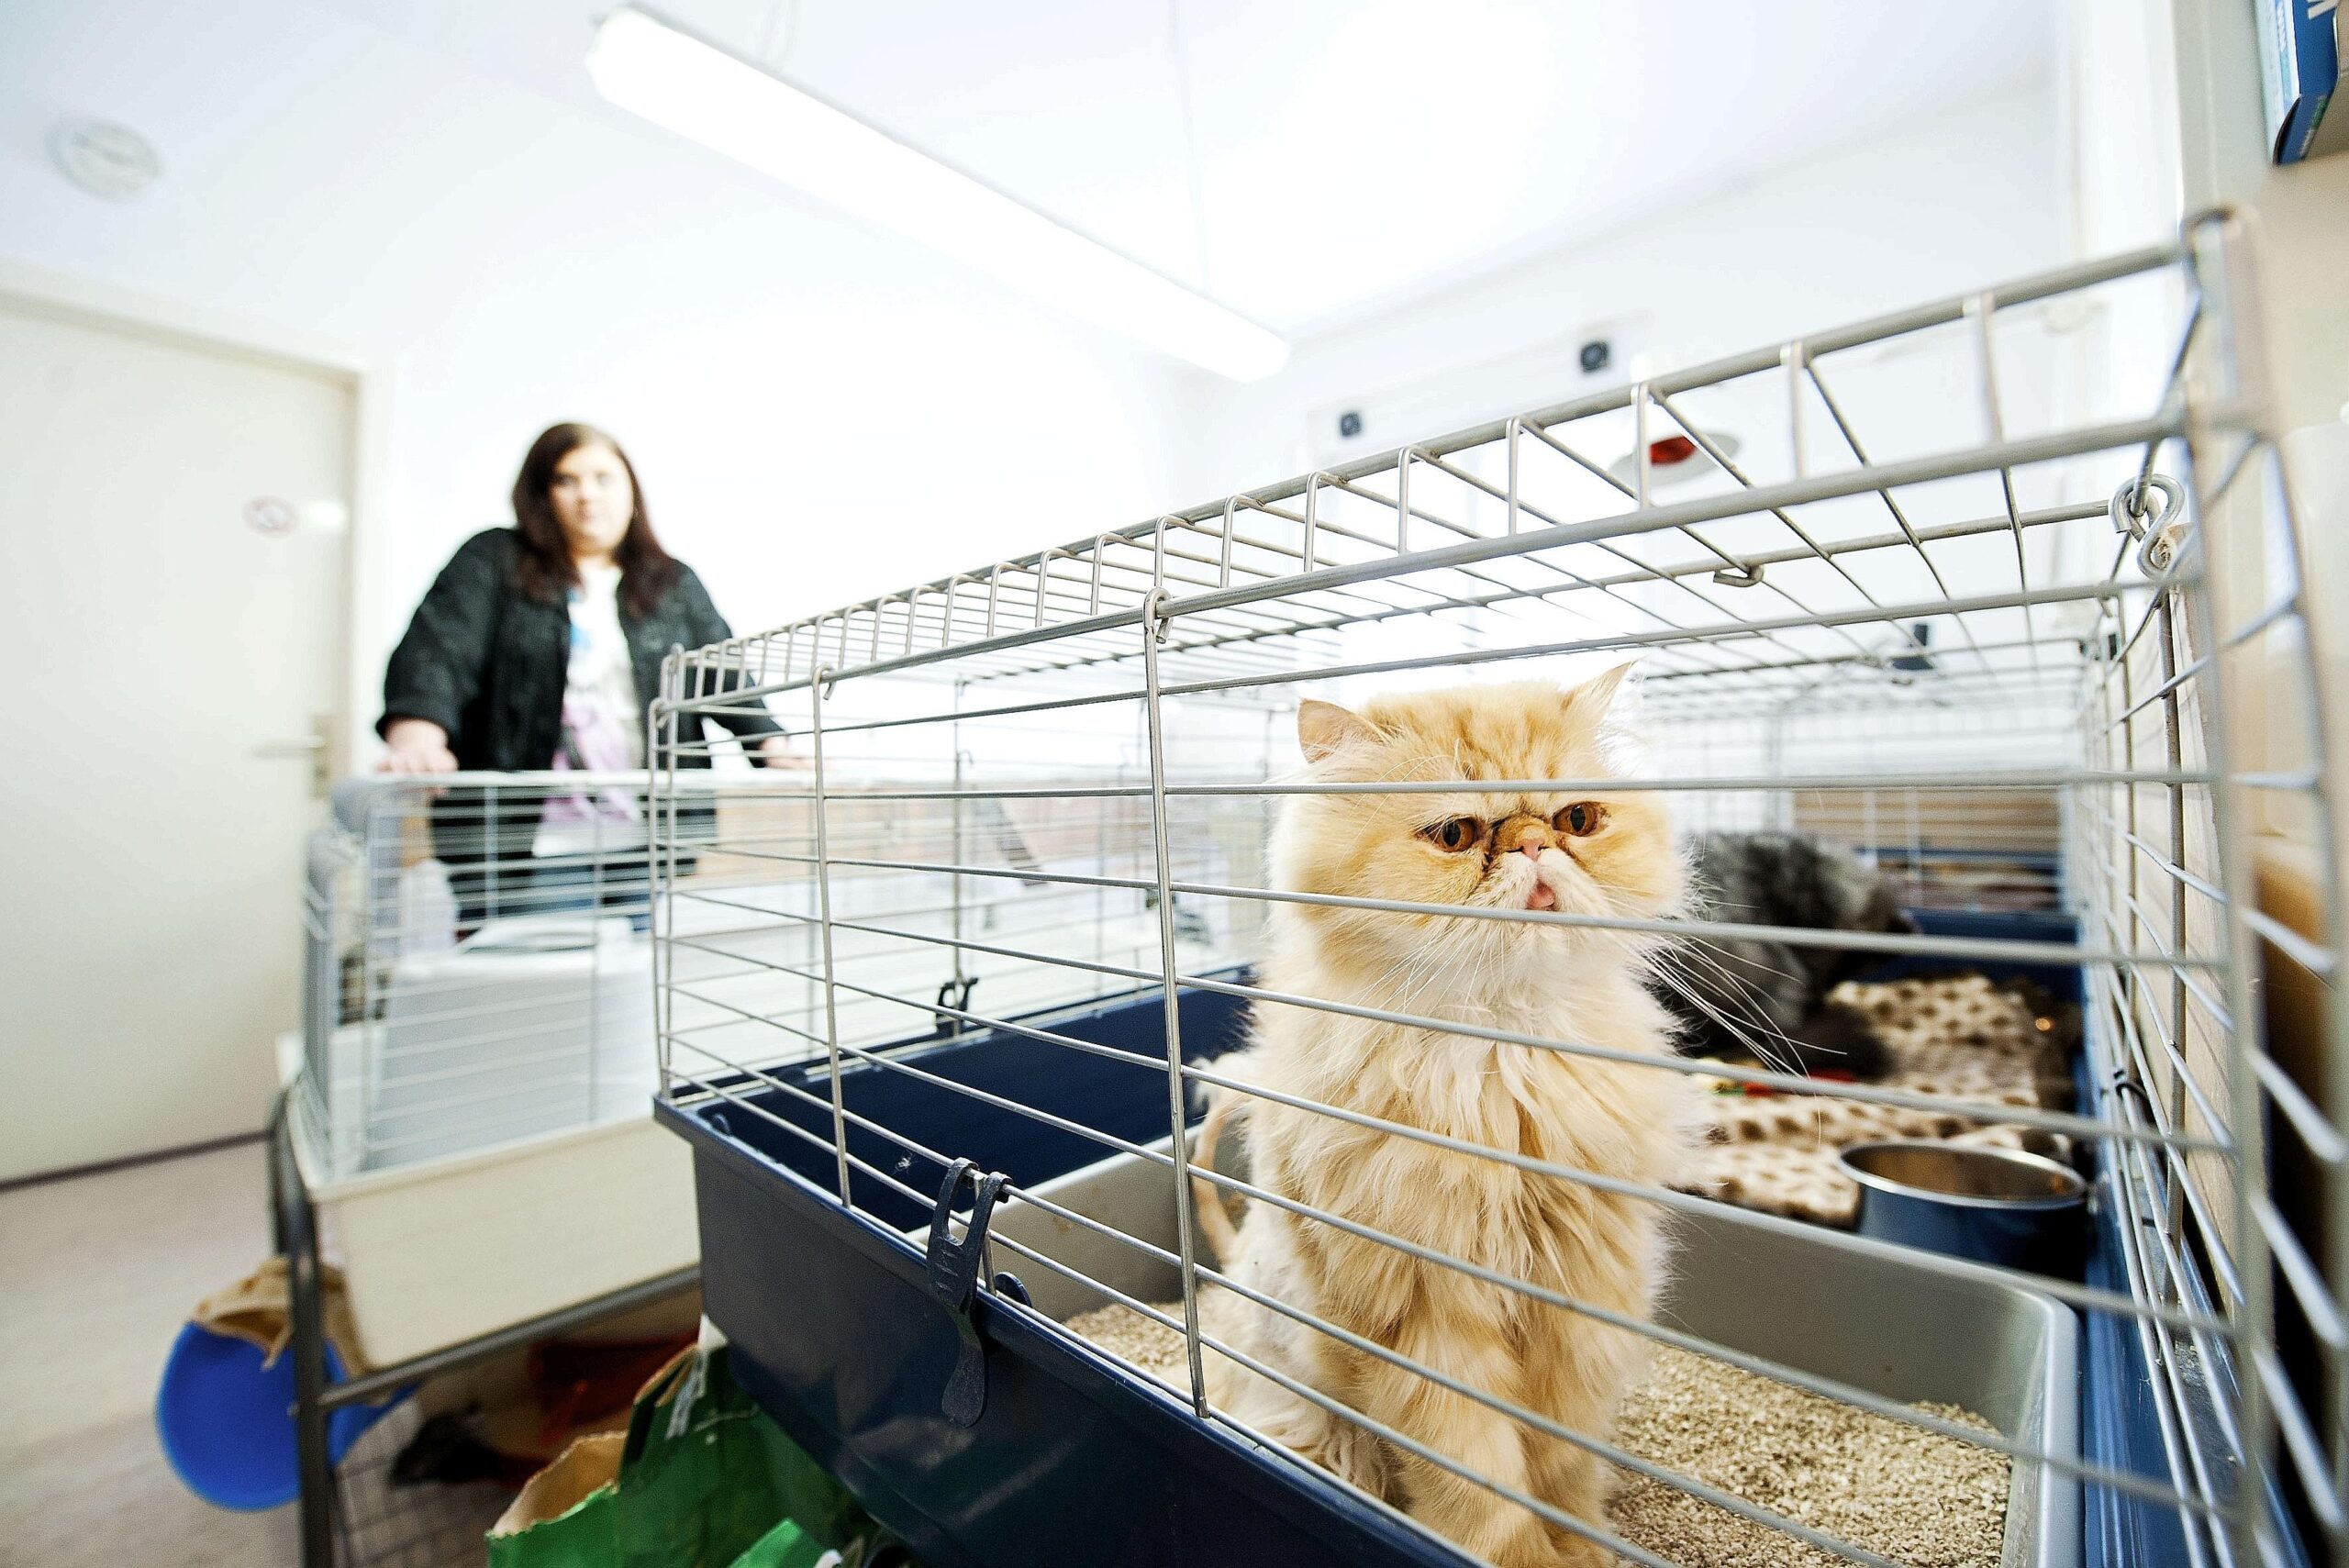 Am Freitag, den 10.06.2011 schaut eine Katze durch ein Gitter eines Käfigs beim Verein Tiere in Not e. V. Bochum. Der Verein hat eine Katzenpflegestation in einem Wohnhaus an der Castroper Straße. Foto: Olaf Ziegler / WAZ FotoPool